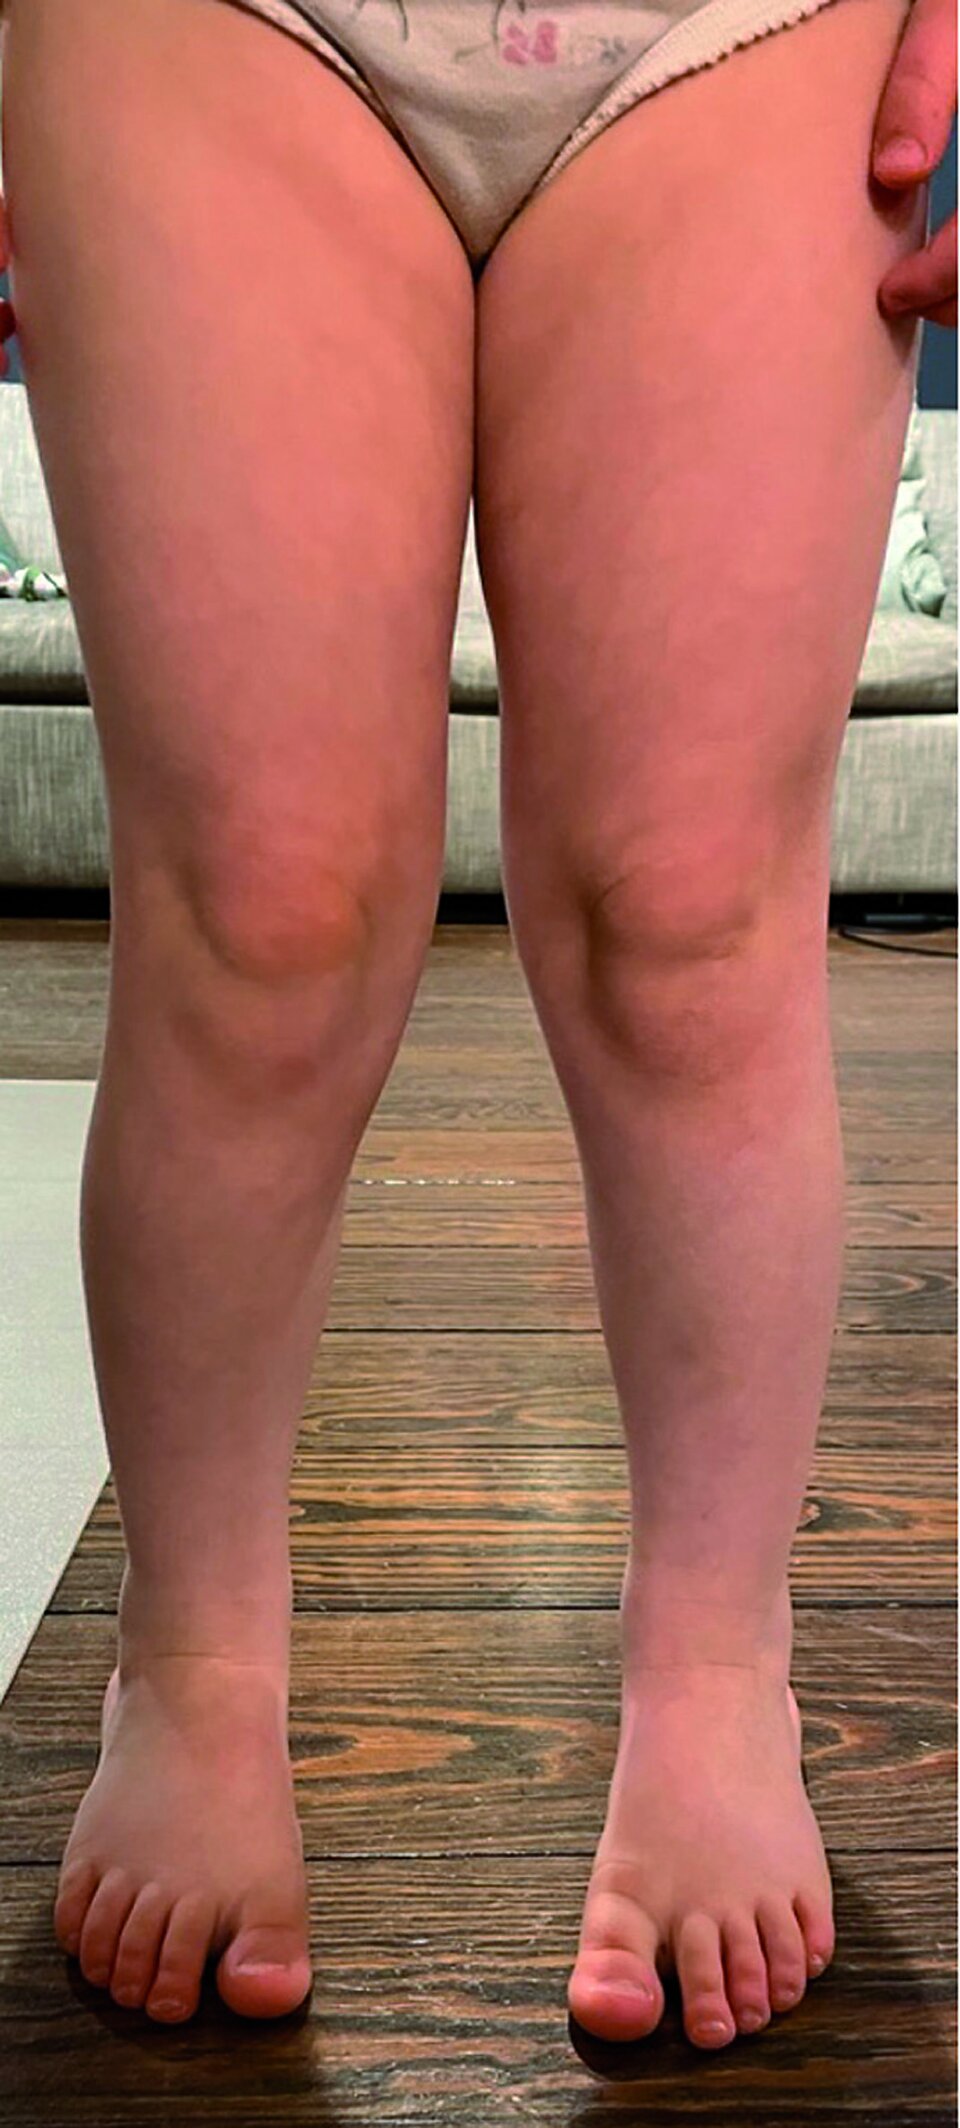 Abb.3: Genua valga bei einem vierjährigen Kind: Die Beinachsen werden im Stand bei zentrierter und nach ventral gerichteter Patella beurteilt. Dabei kann der intermalleoläre oder interkondyläre Abstand gemessen werden.